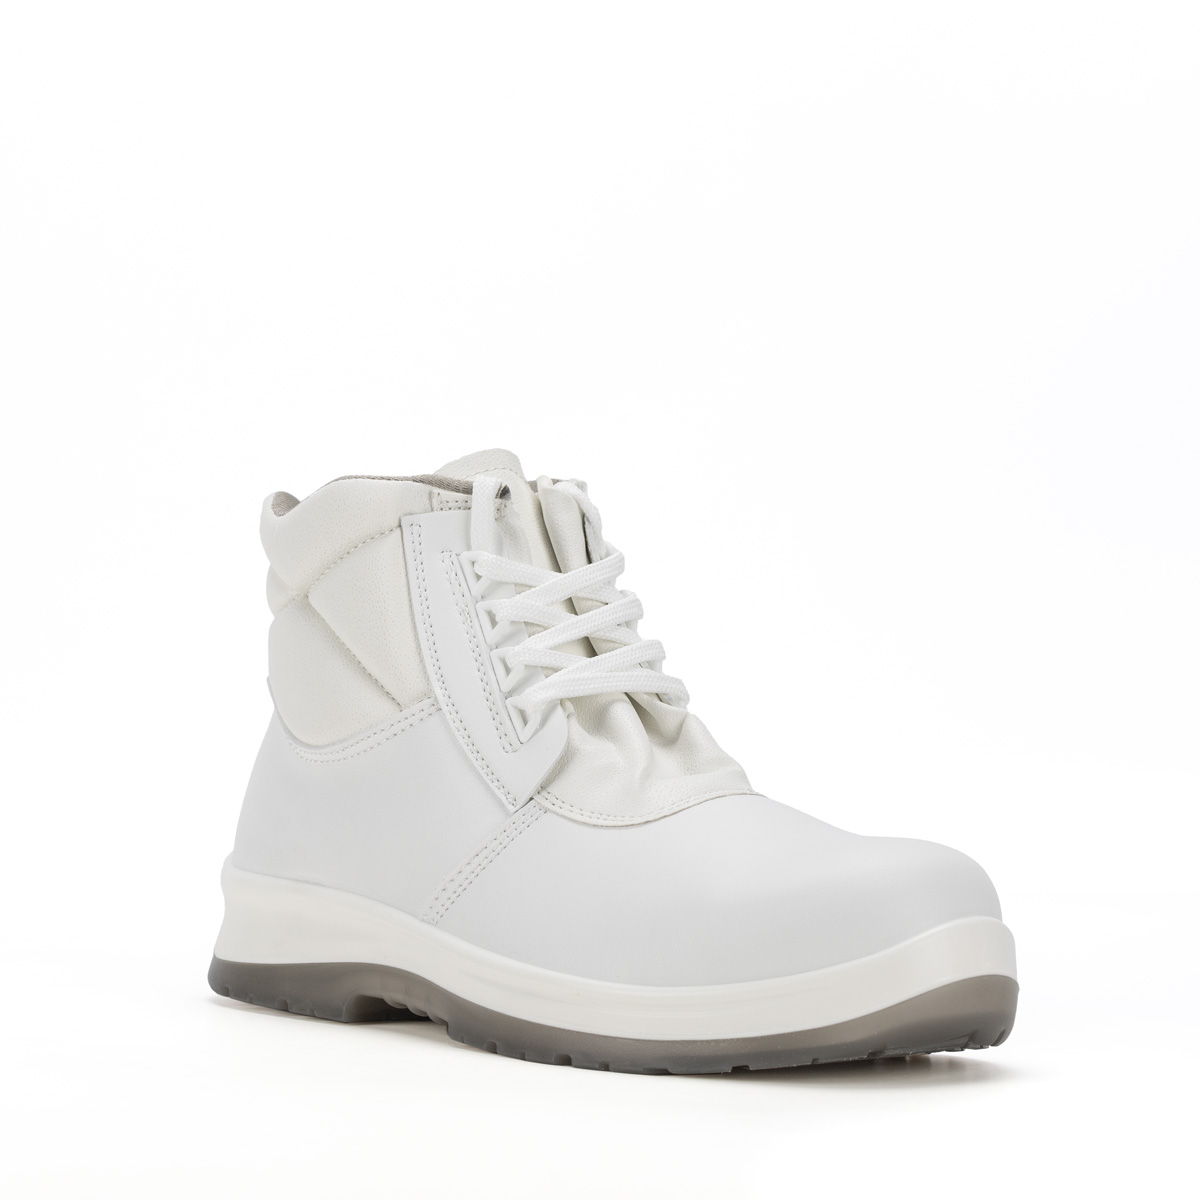 86206-00 classe - - con protezione di Ankle Safety S2 BERGAMO Shoes modello Codice boot Peak SRC Sixton Crystal